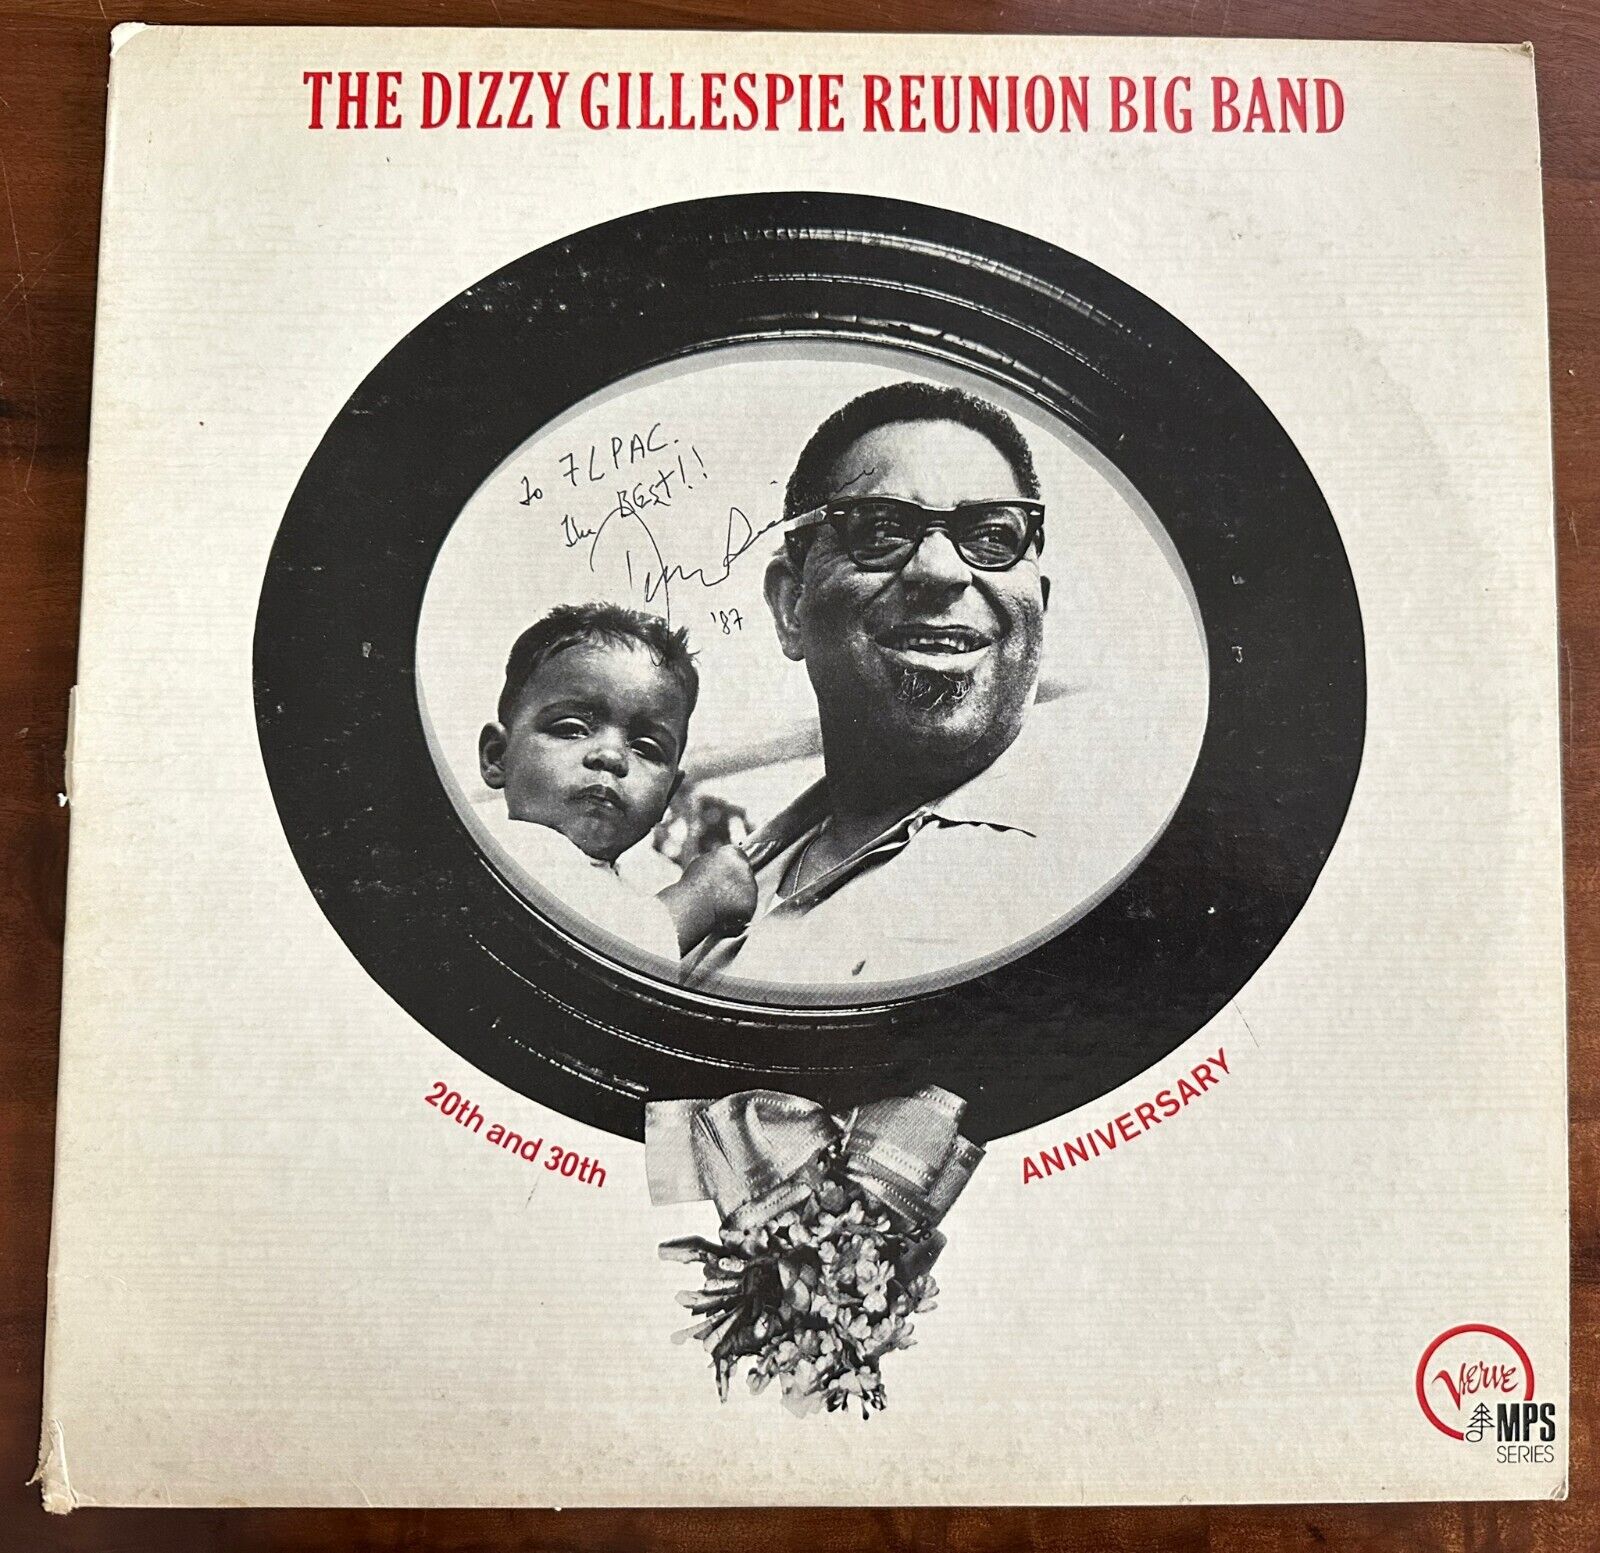 Signed autographed DIZZY GILLESPIE reunion big band vinyl jazz legend